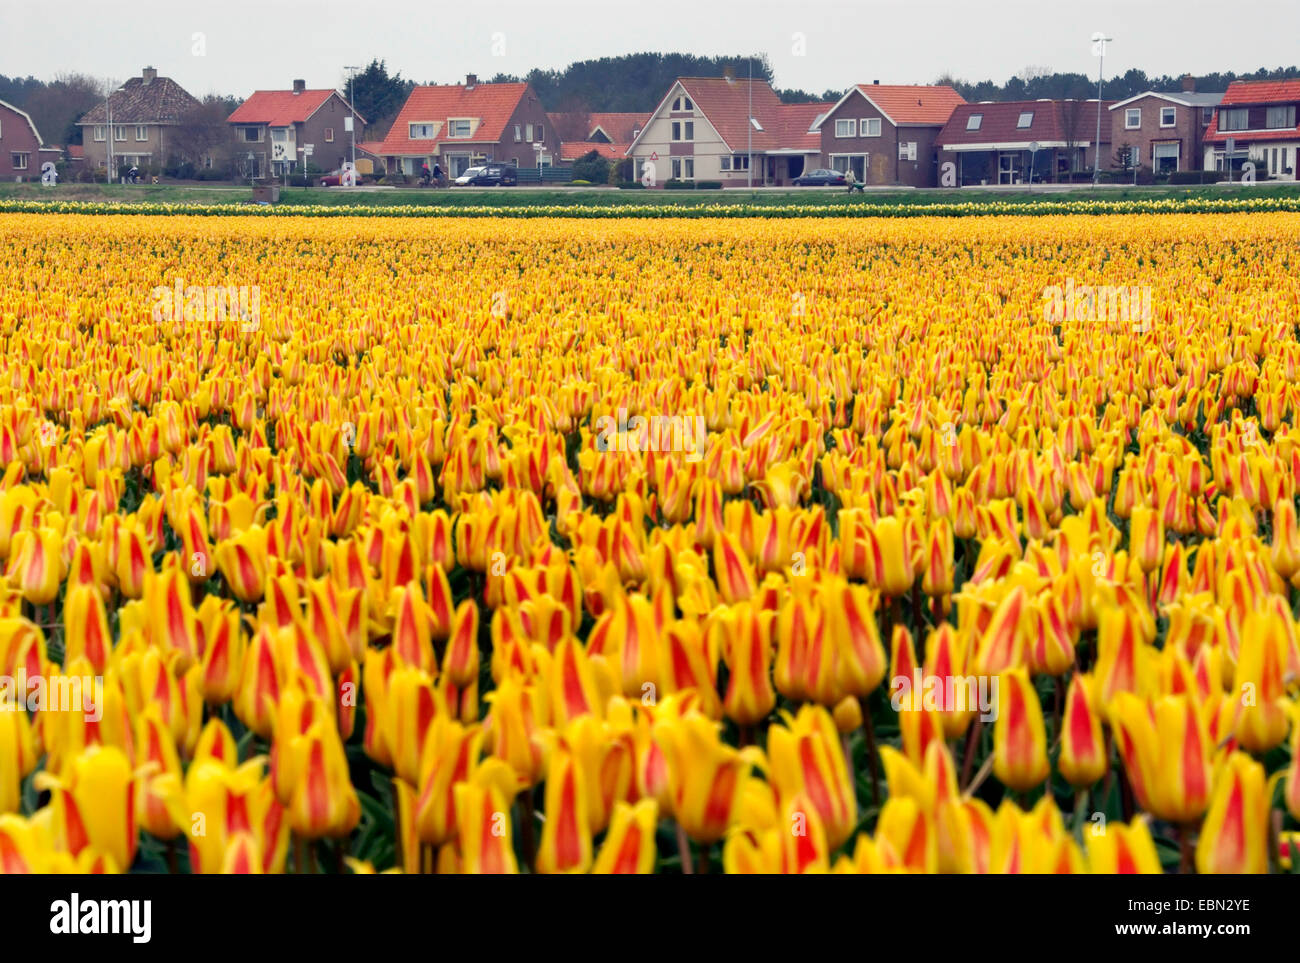 common garden tulip (Tulipa gesneriana), tulip field at the edge of a village, Netherlands Stock Photo